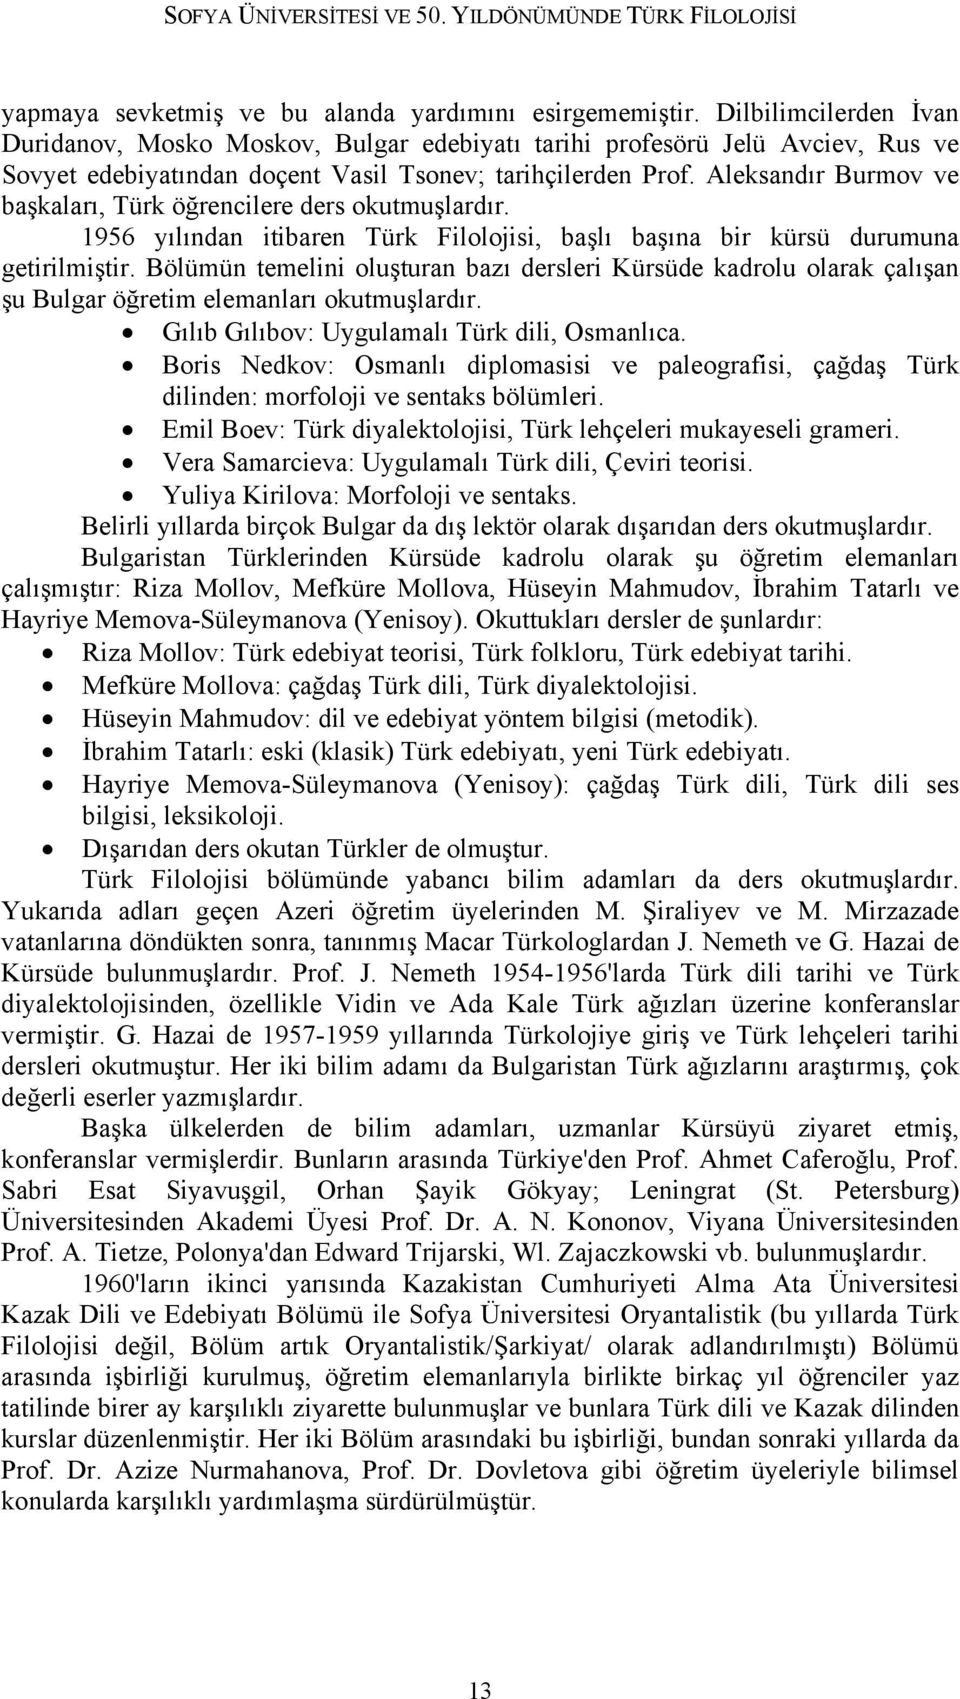 Aleksandır Burmov ve başkaları, Türk öğrencilere ders okutmuşlardır. 1956 yılından itibaren Türk Filolojisi, başlı başına bir kürsü durumuna getirilmiştir.